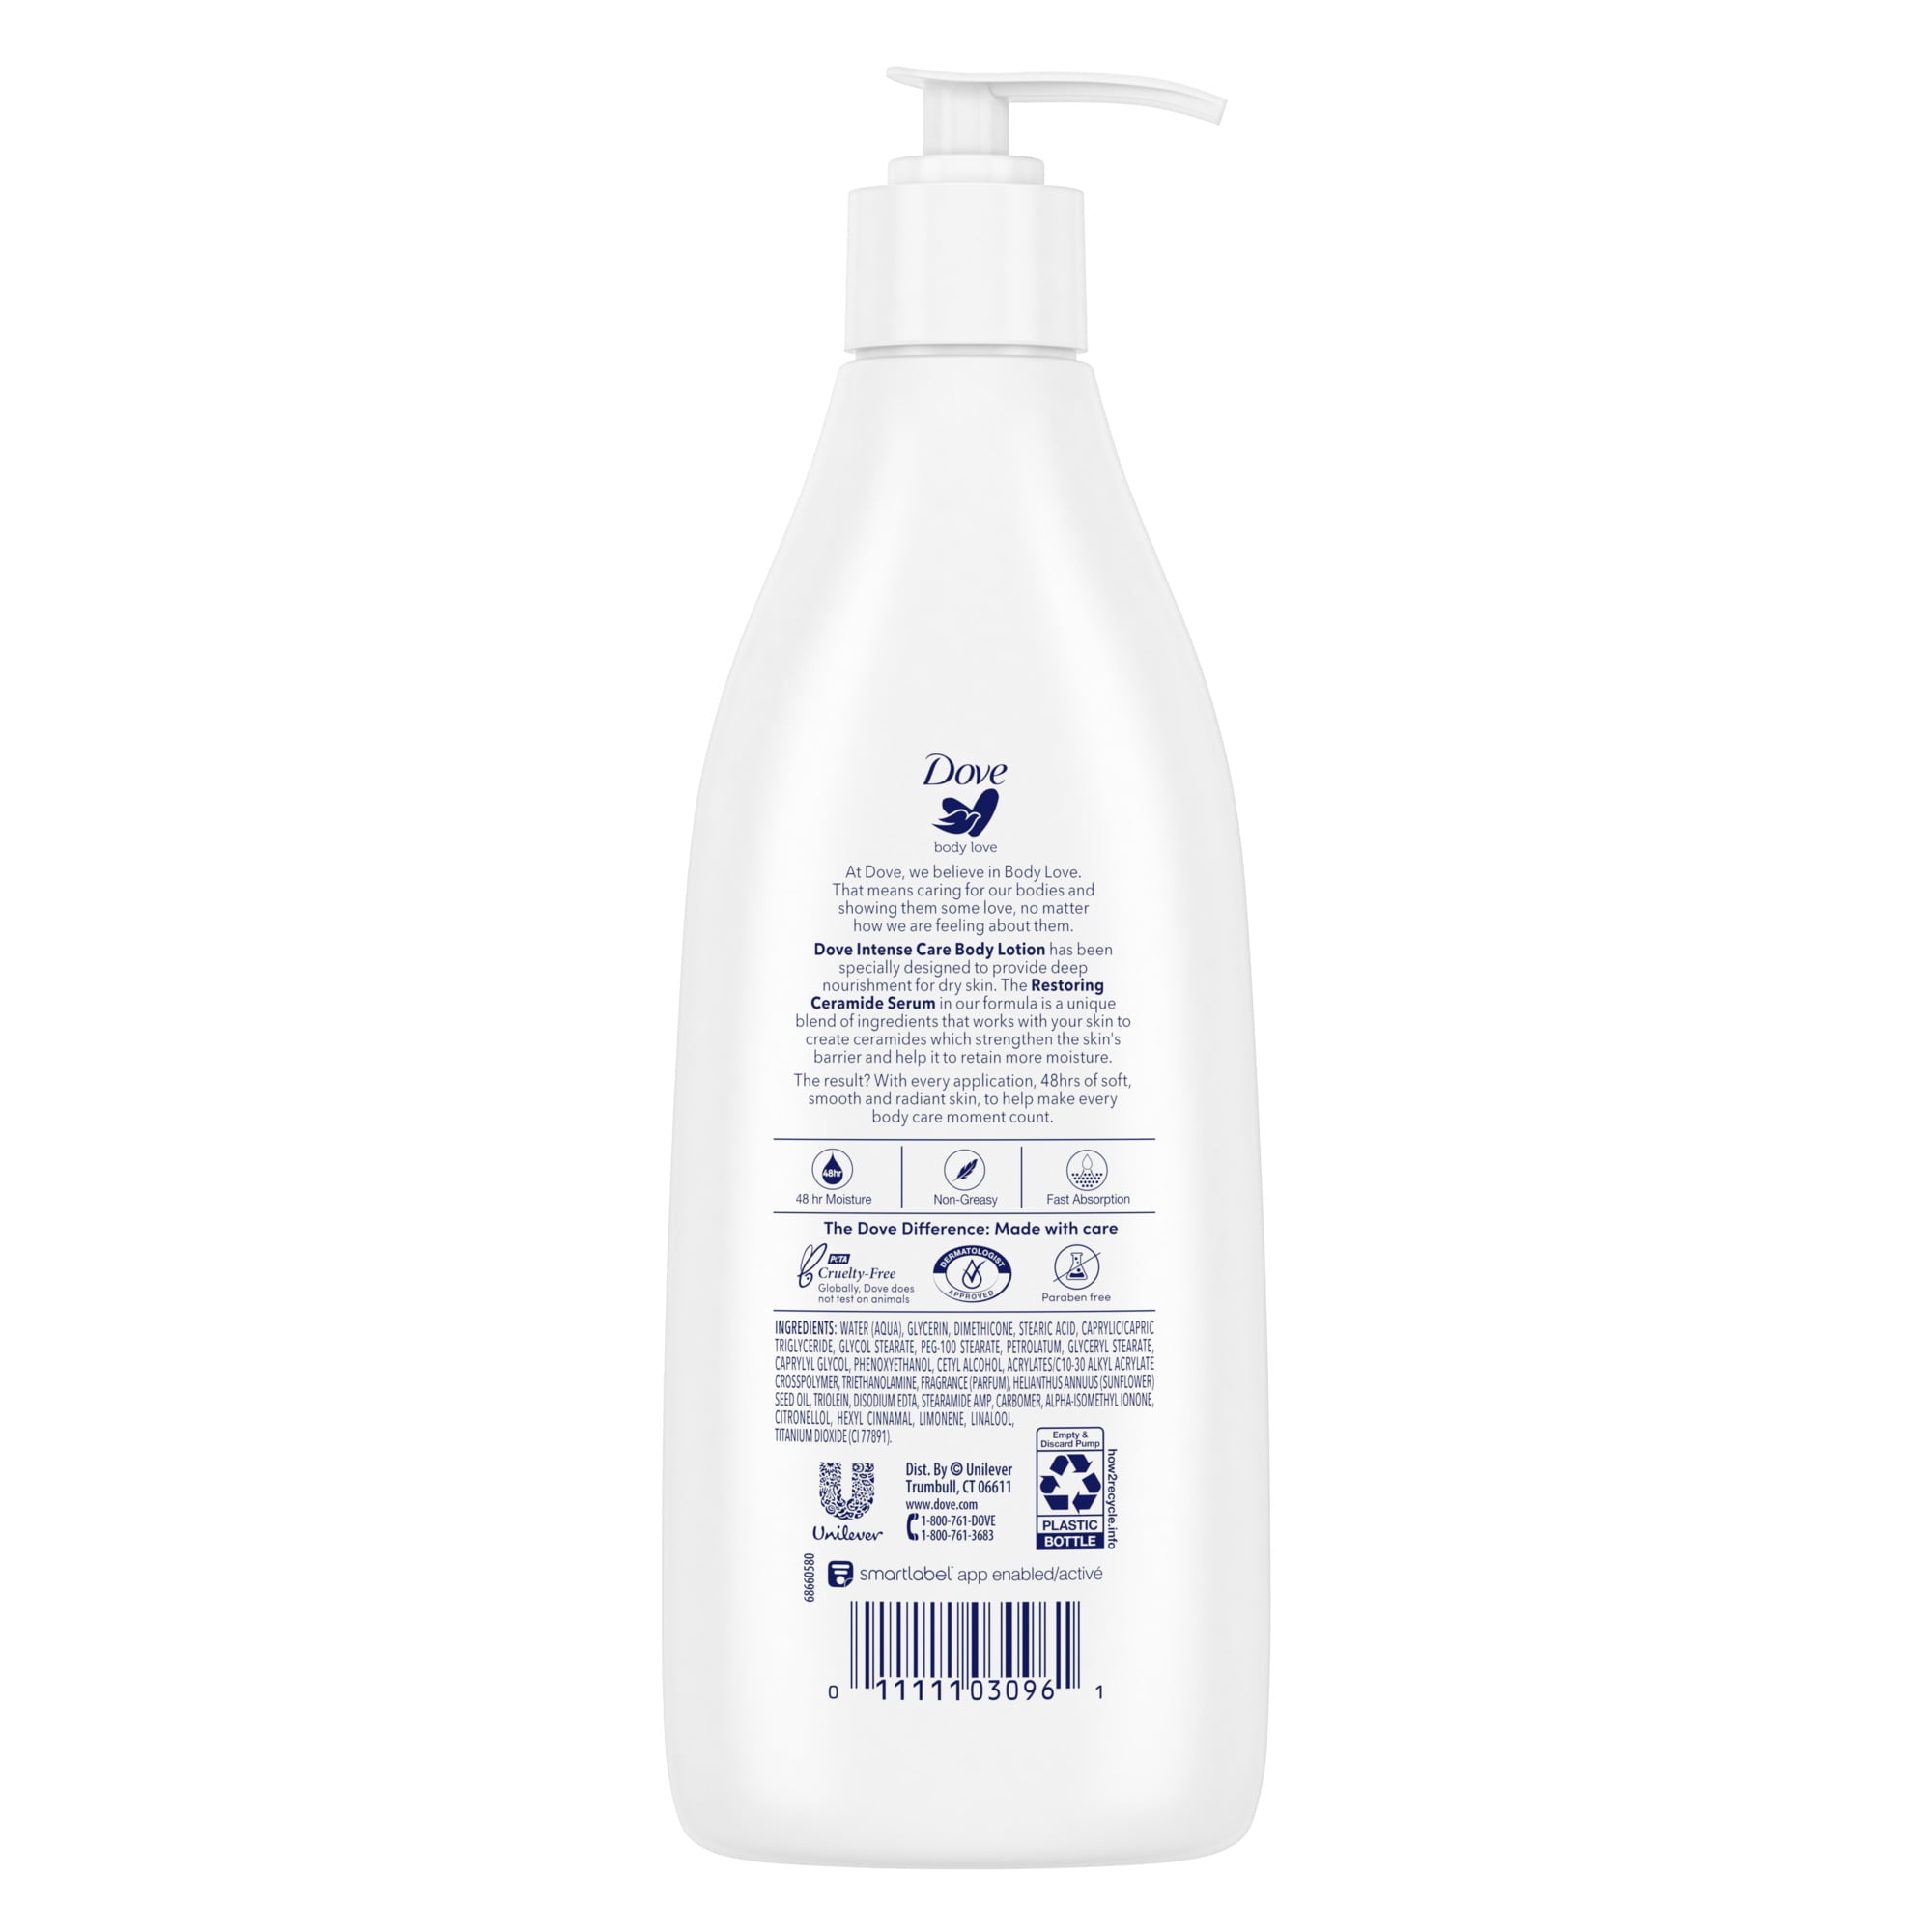 Dove Body Love Intense Care Non Greasy Body Lotion Cream Oil for Dry Skin, 13.5 fl oz | MTTS410